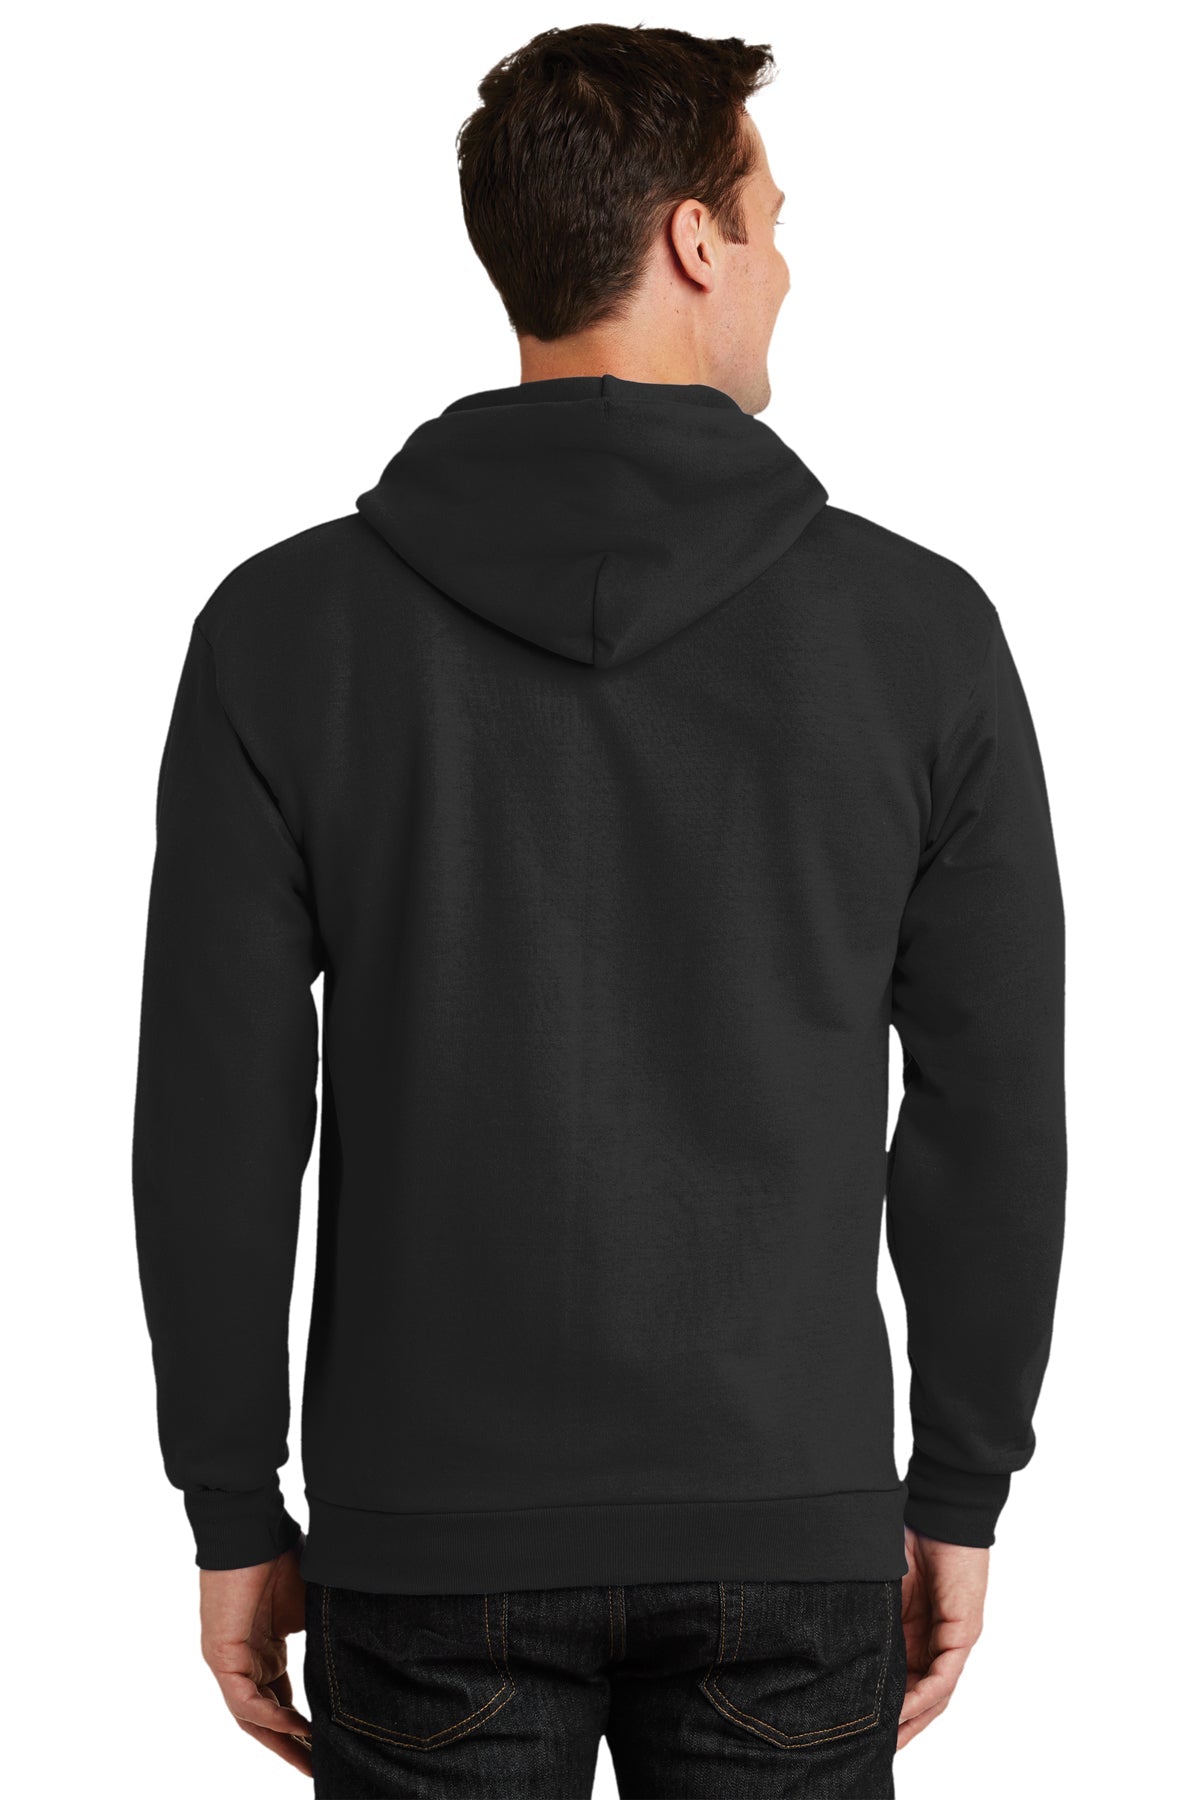 Port & Company Tall Essential Fleece Zip Branded Hoodies, Jet Black